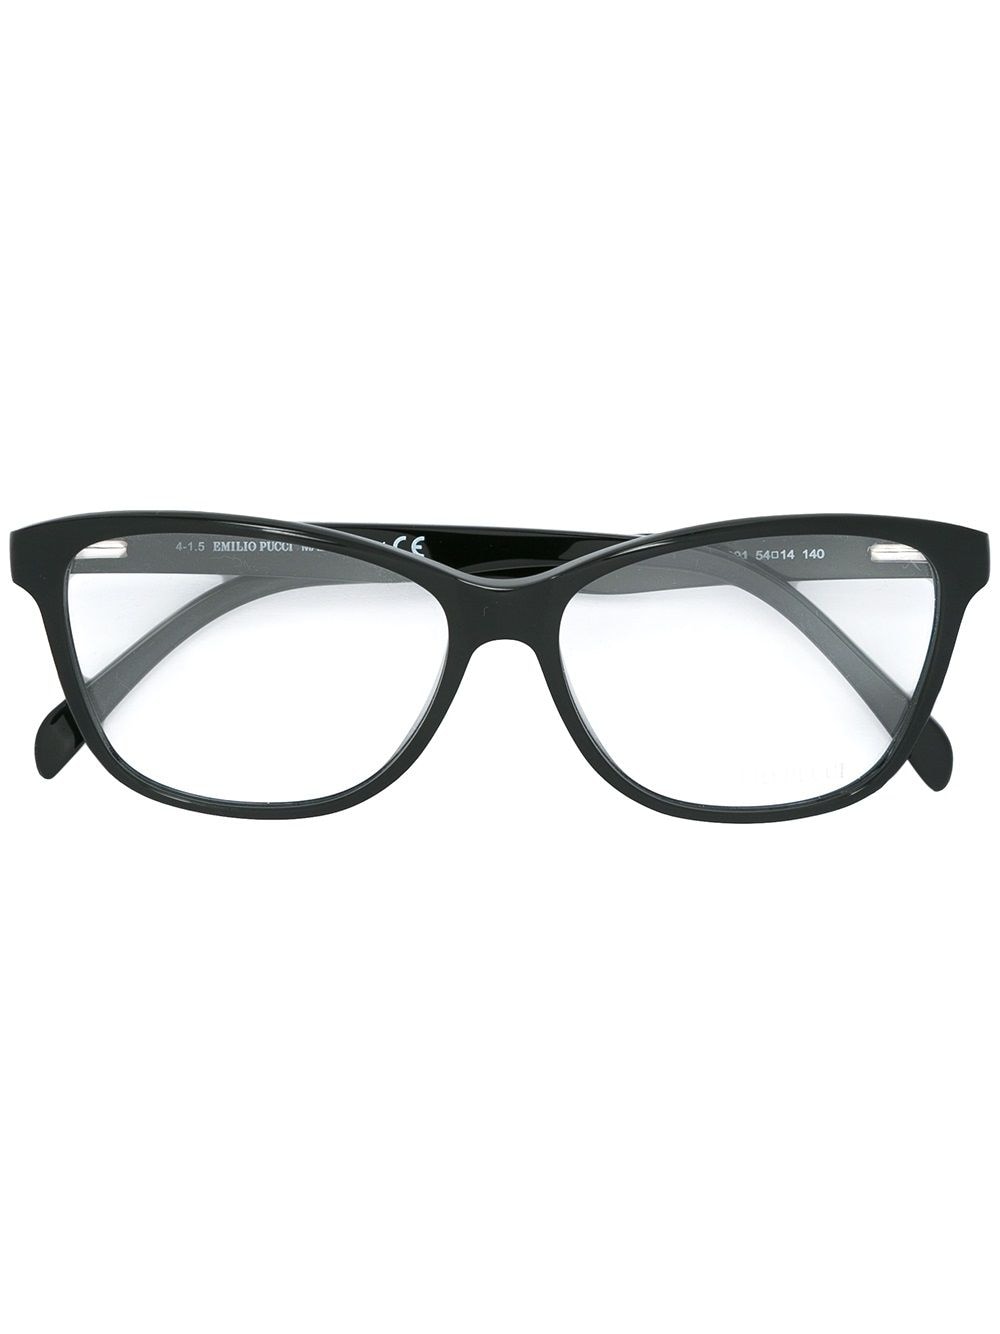 optical glasses